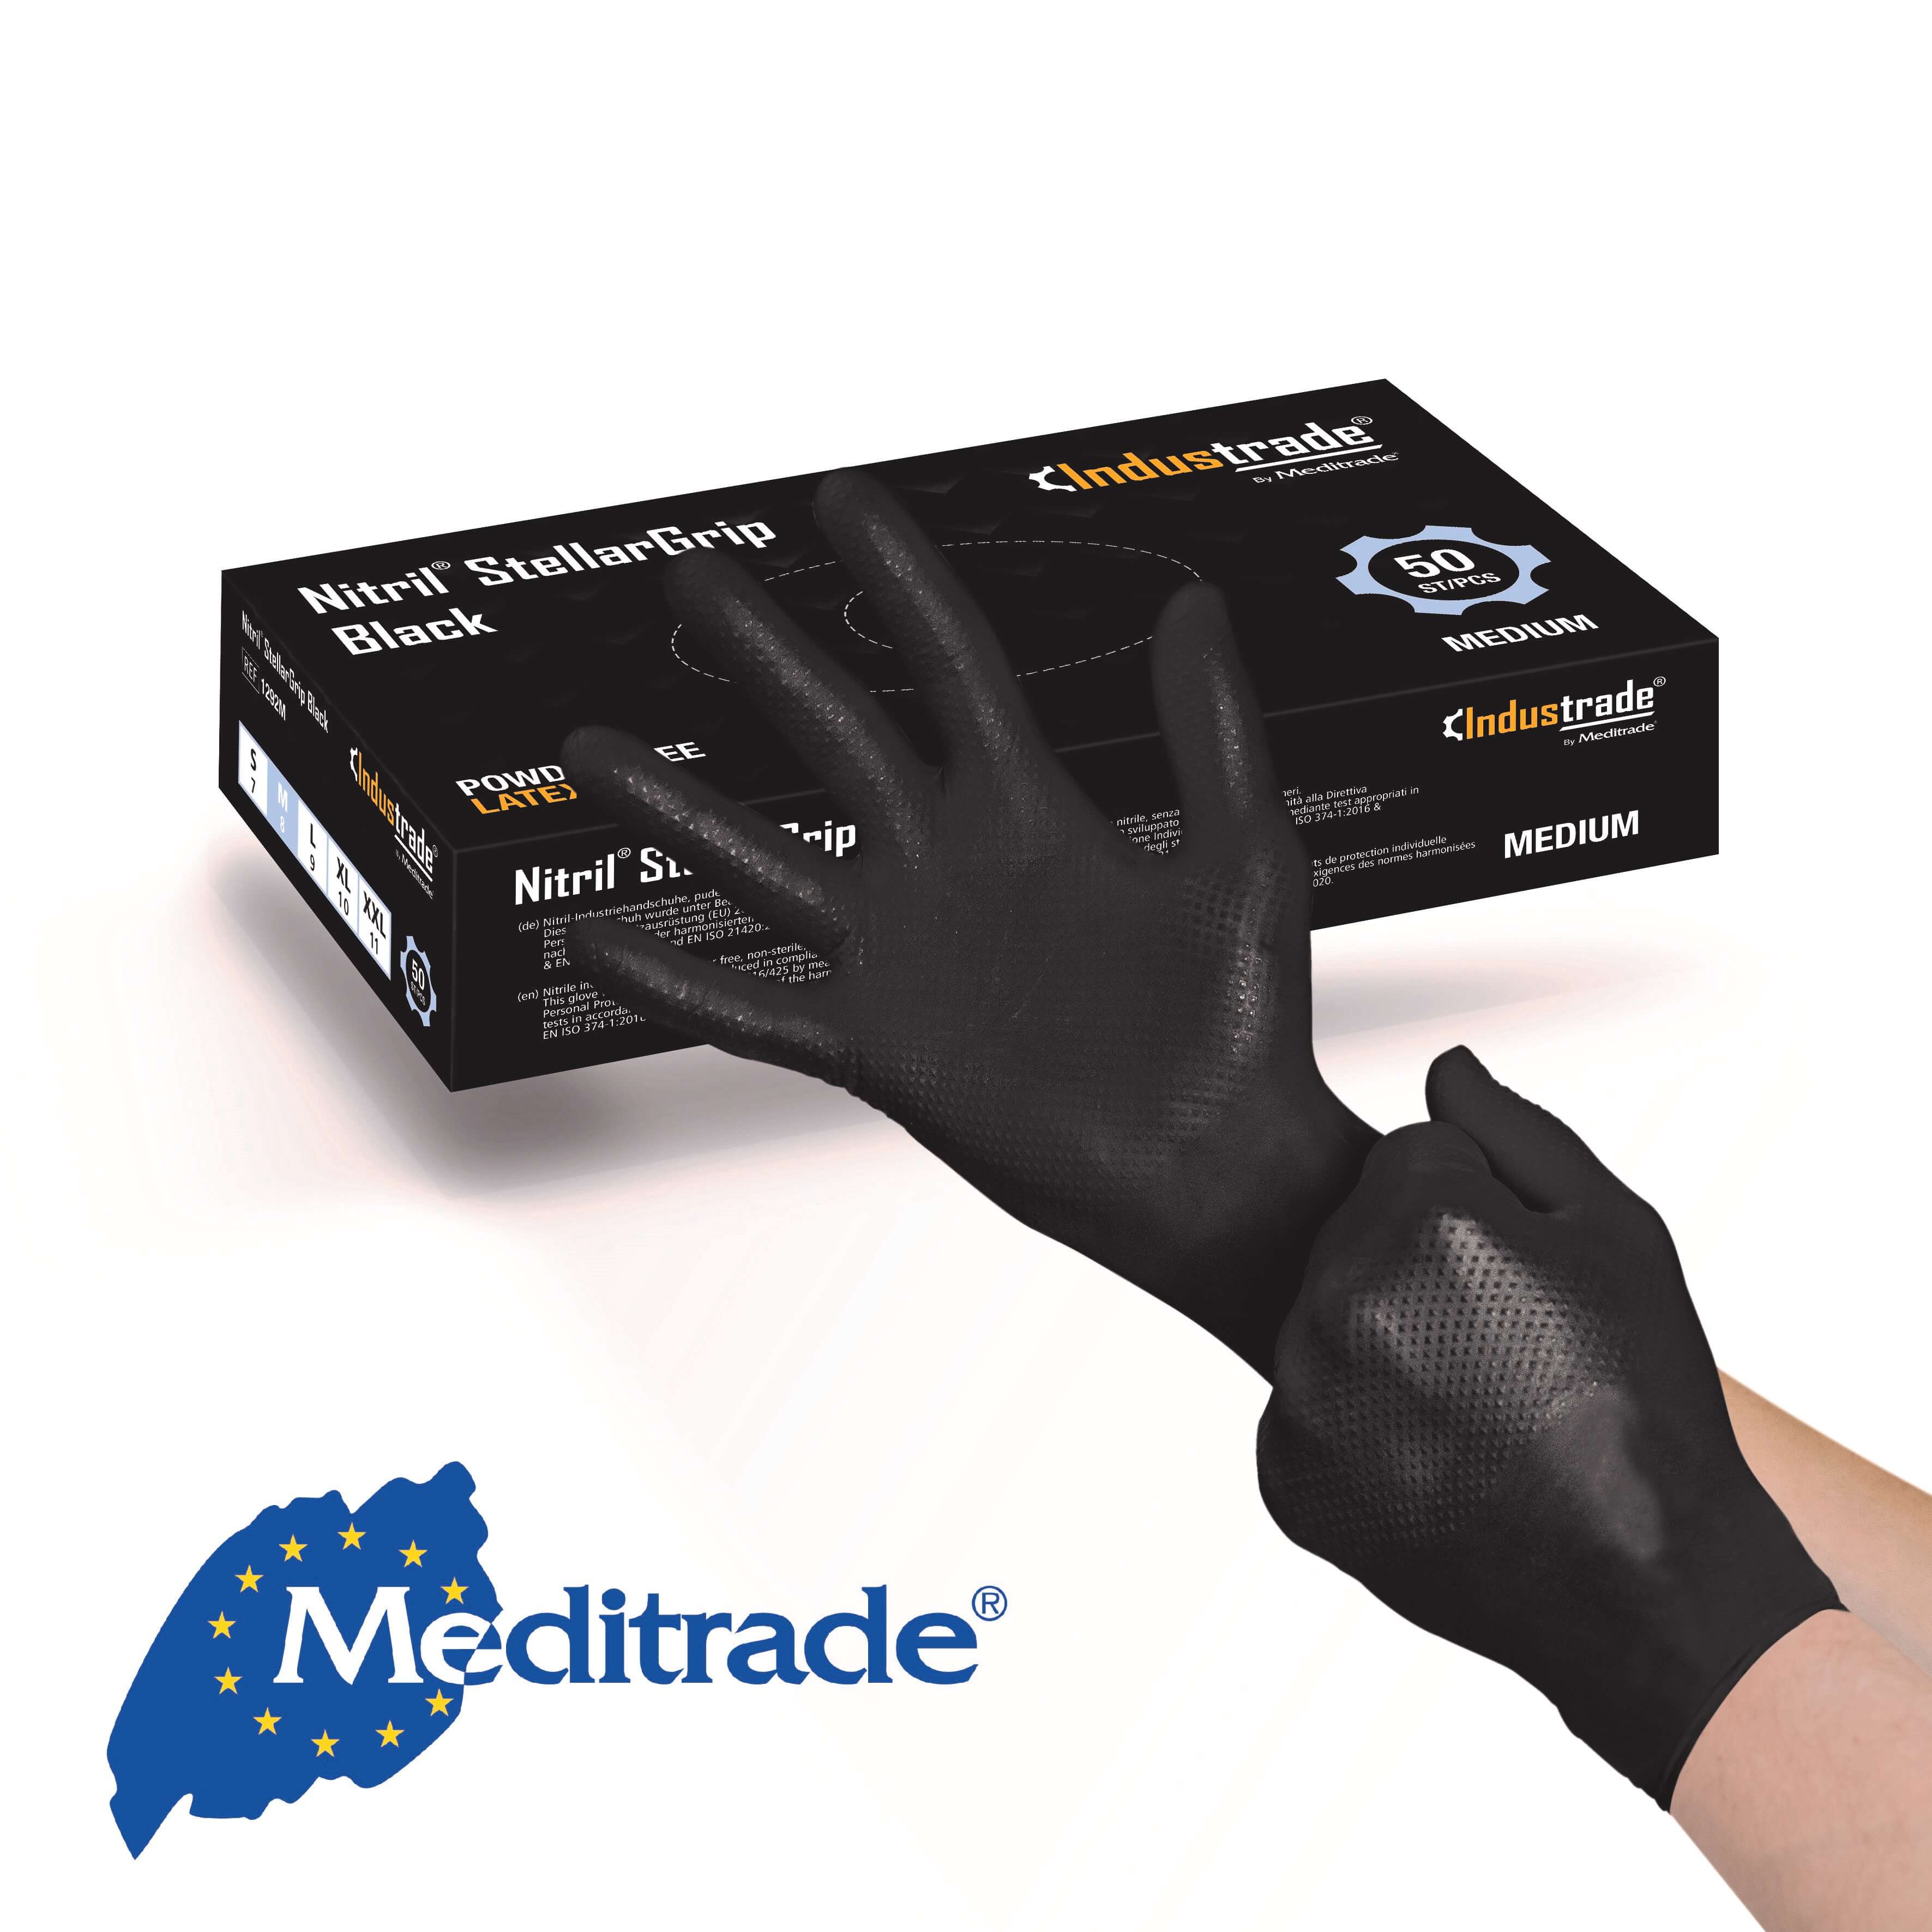 Meditrade Nitril® StellarGrip Black Schutzhandschuh Gr. S